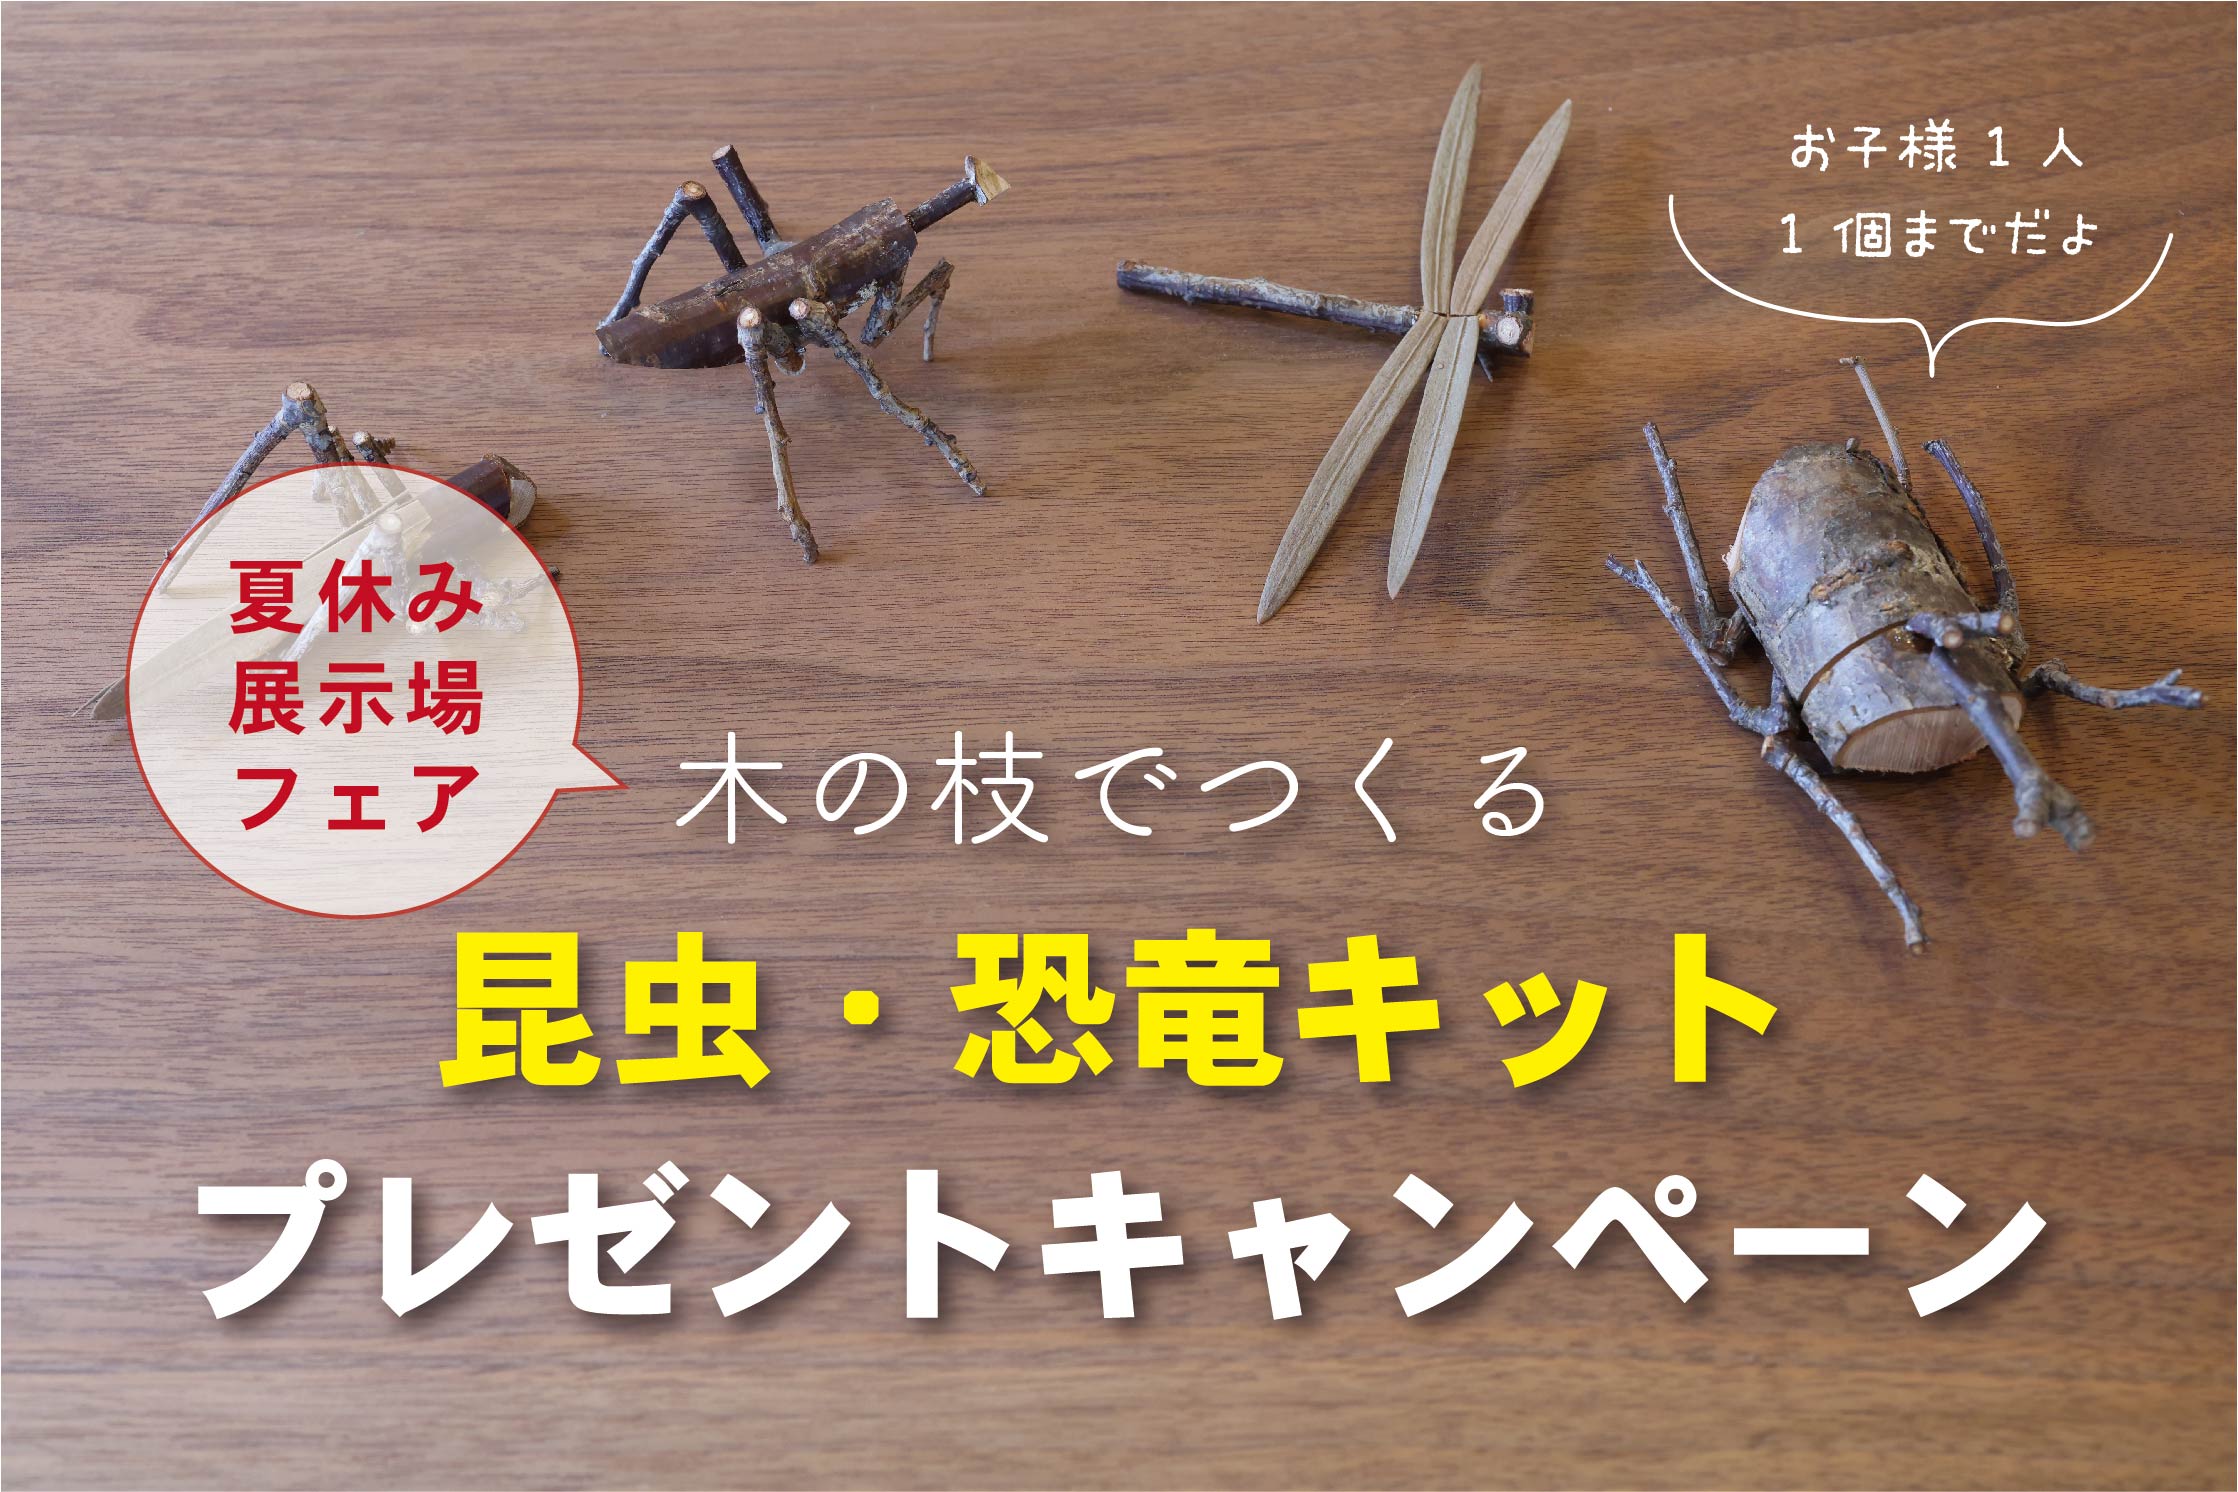 【安成工務店】昆虫・恐竜キット プレゼントキャンペーン